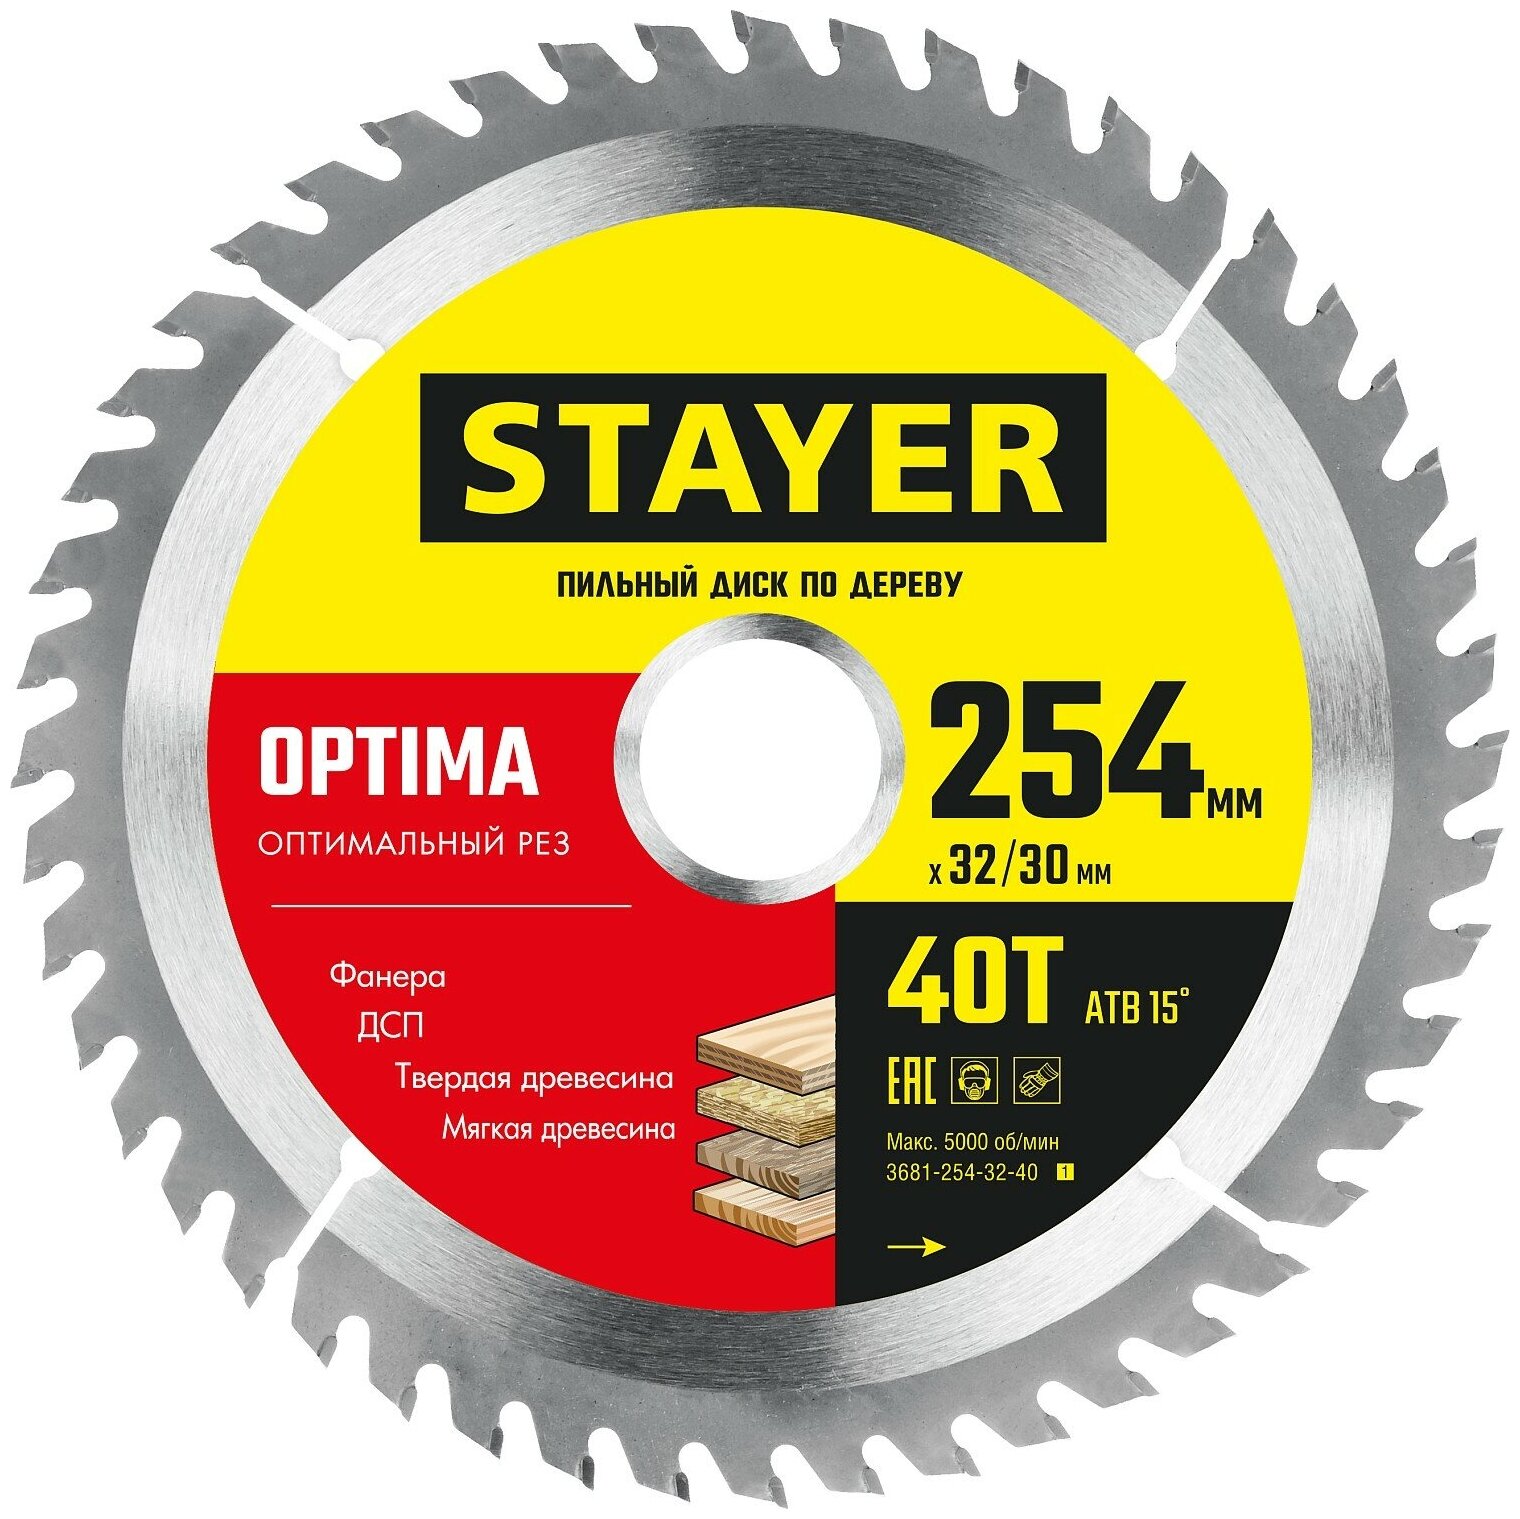 STAYER Optima, 254 x 32/30 мм, 40Т, оптимальный рез, пильный диск по дереву (3681-254-32-40)